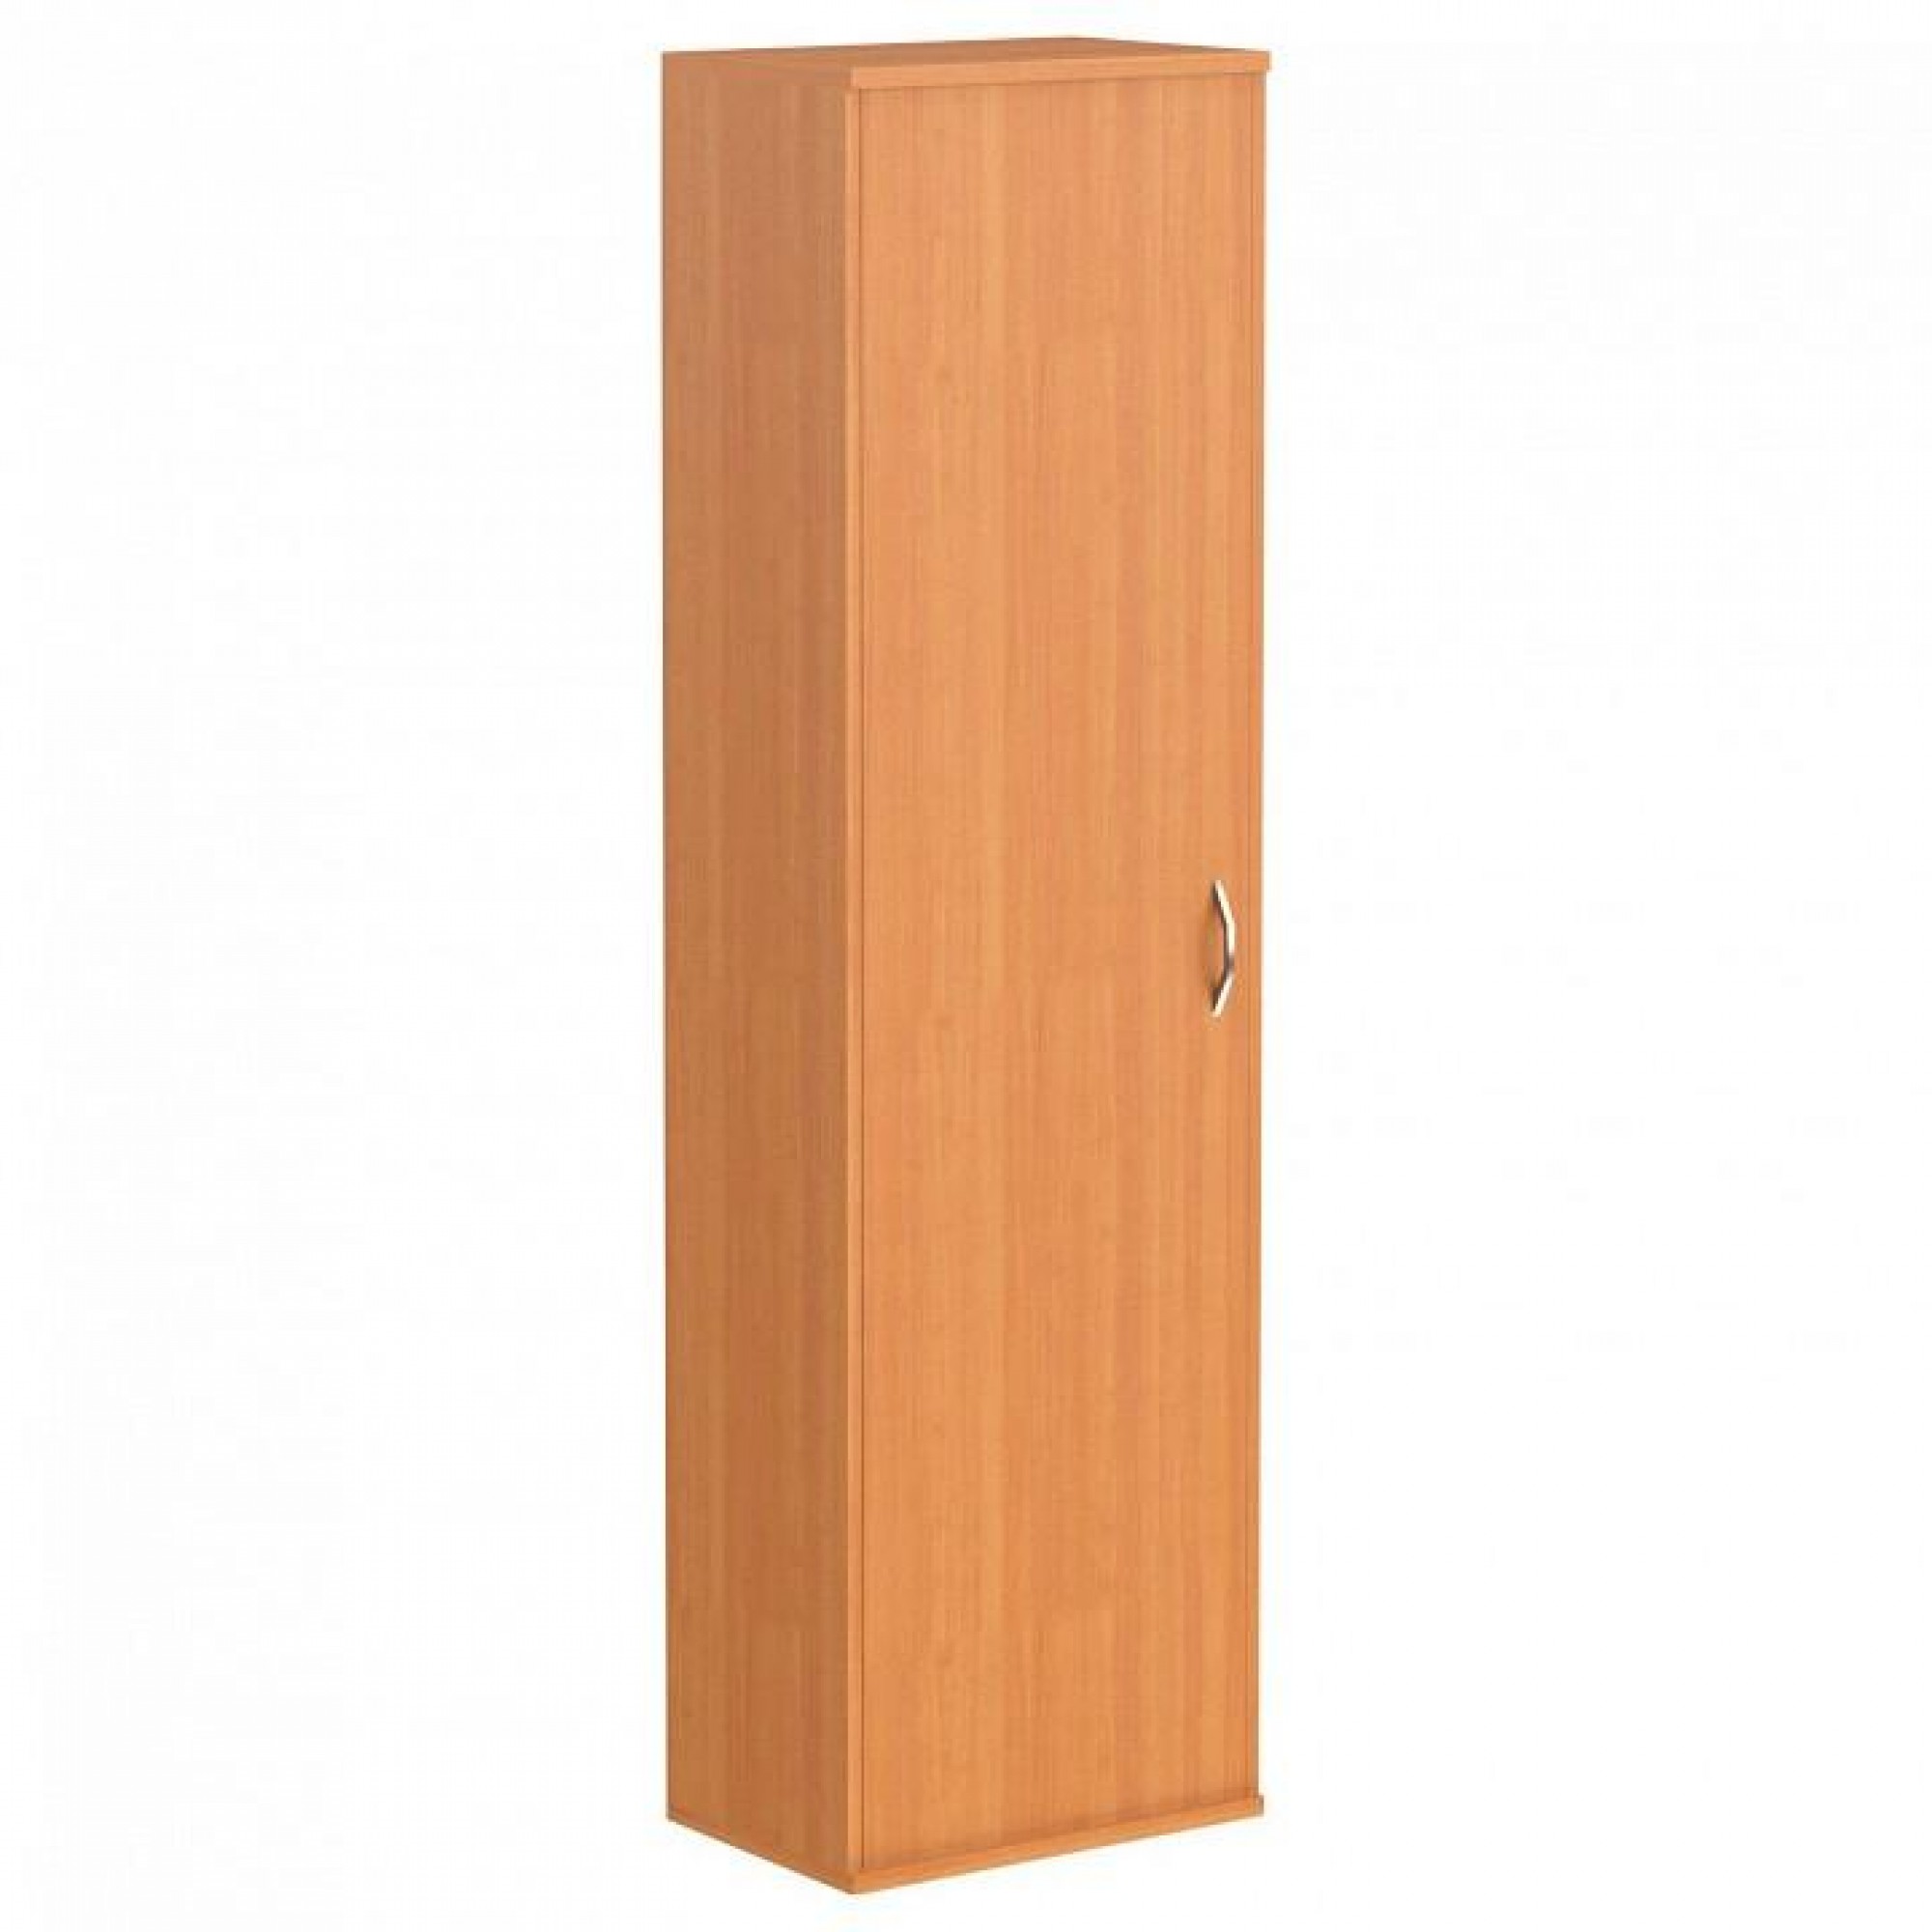 Шкаф платяной Imago ГБ-1 древесина коричневая светлая древесина SKY_sk-01217734